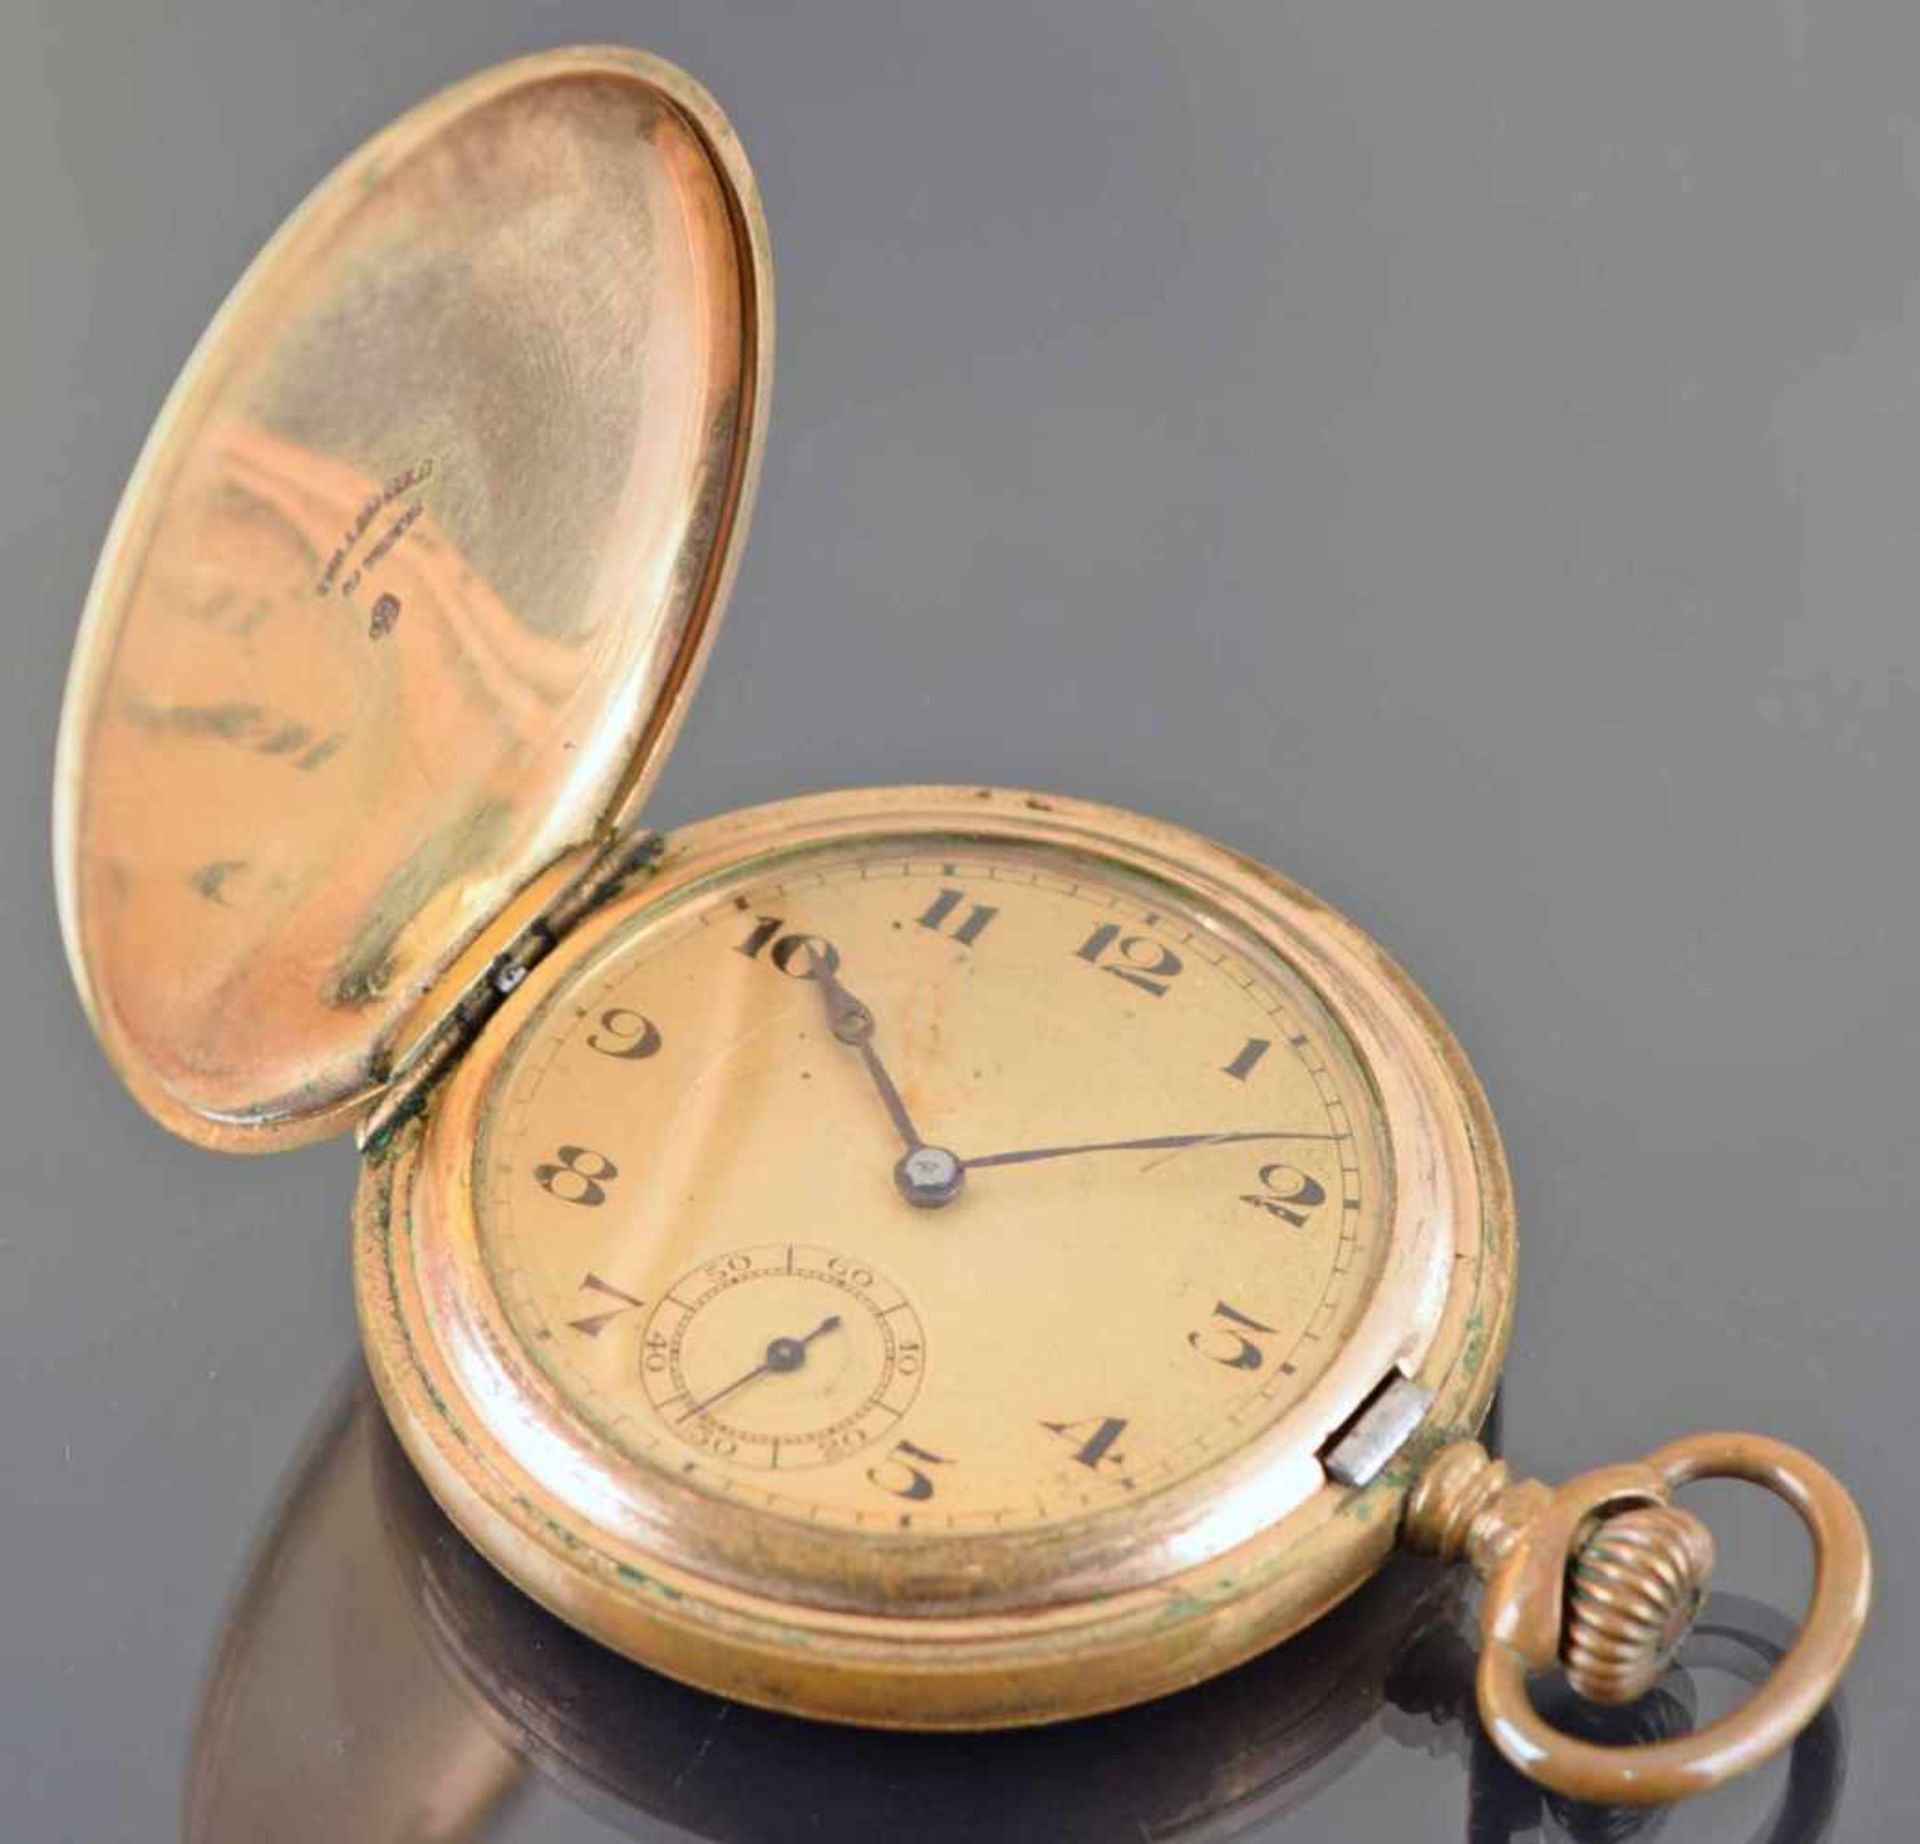 Sprungdeckeltaschenuhr Metallgehäuse vergoldet, Handaufzug, Stunde, Minute und kleine Sekunde auf - Bild 2 aus 2